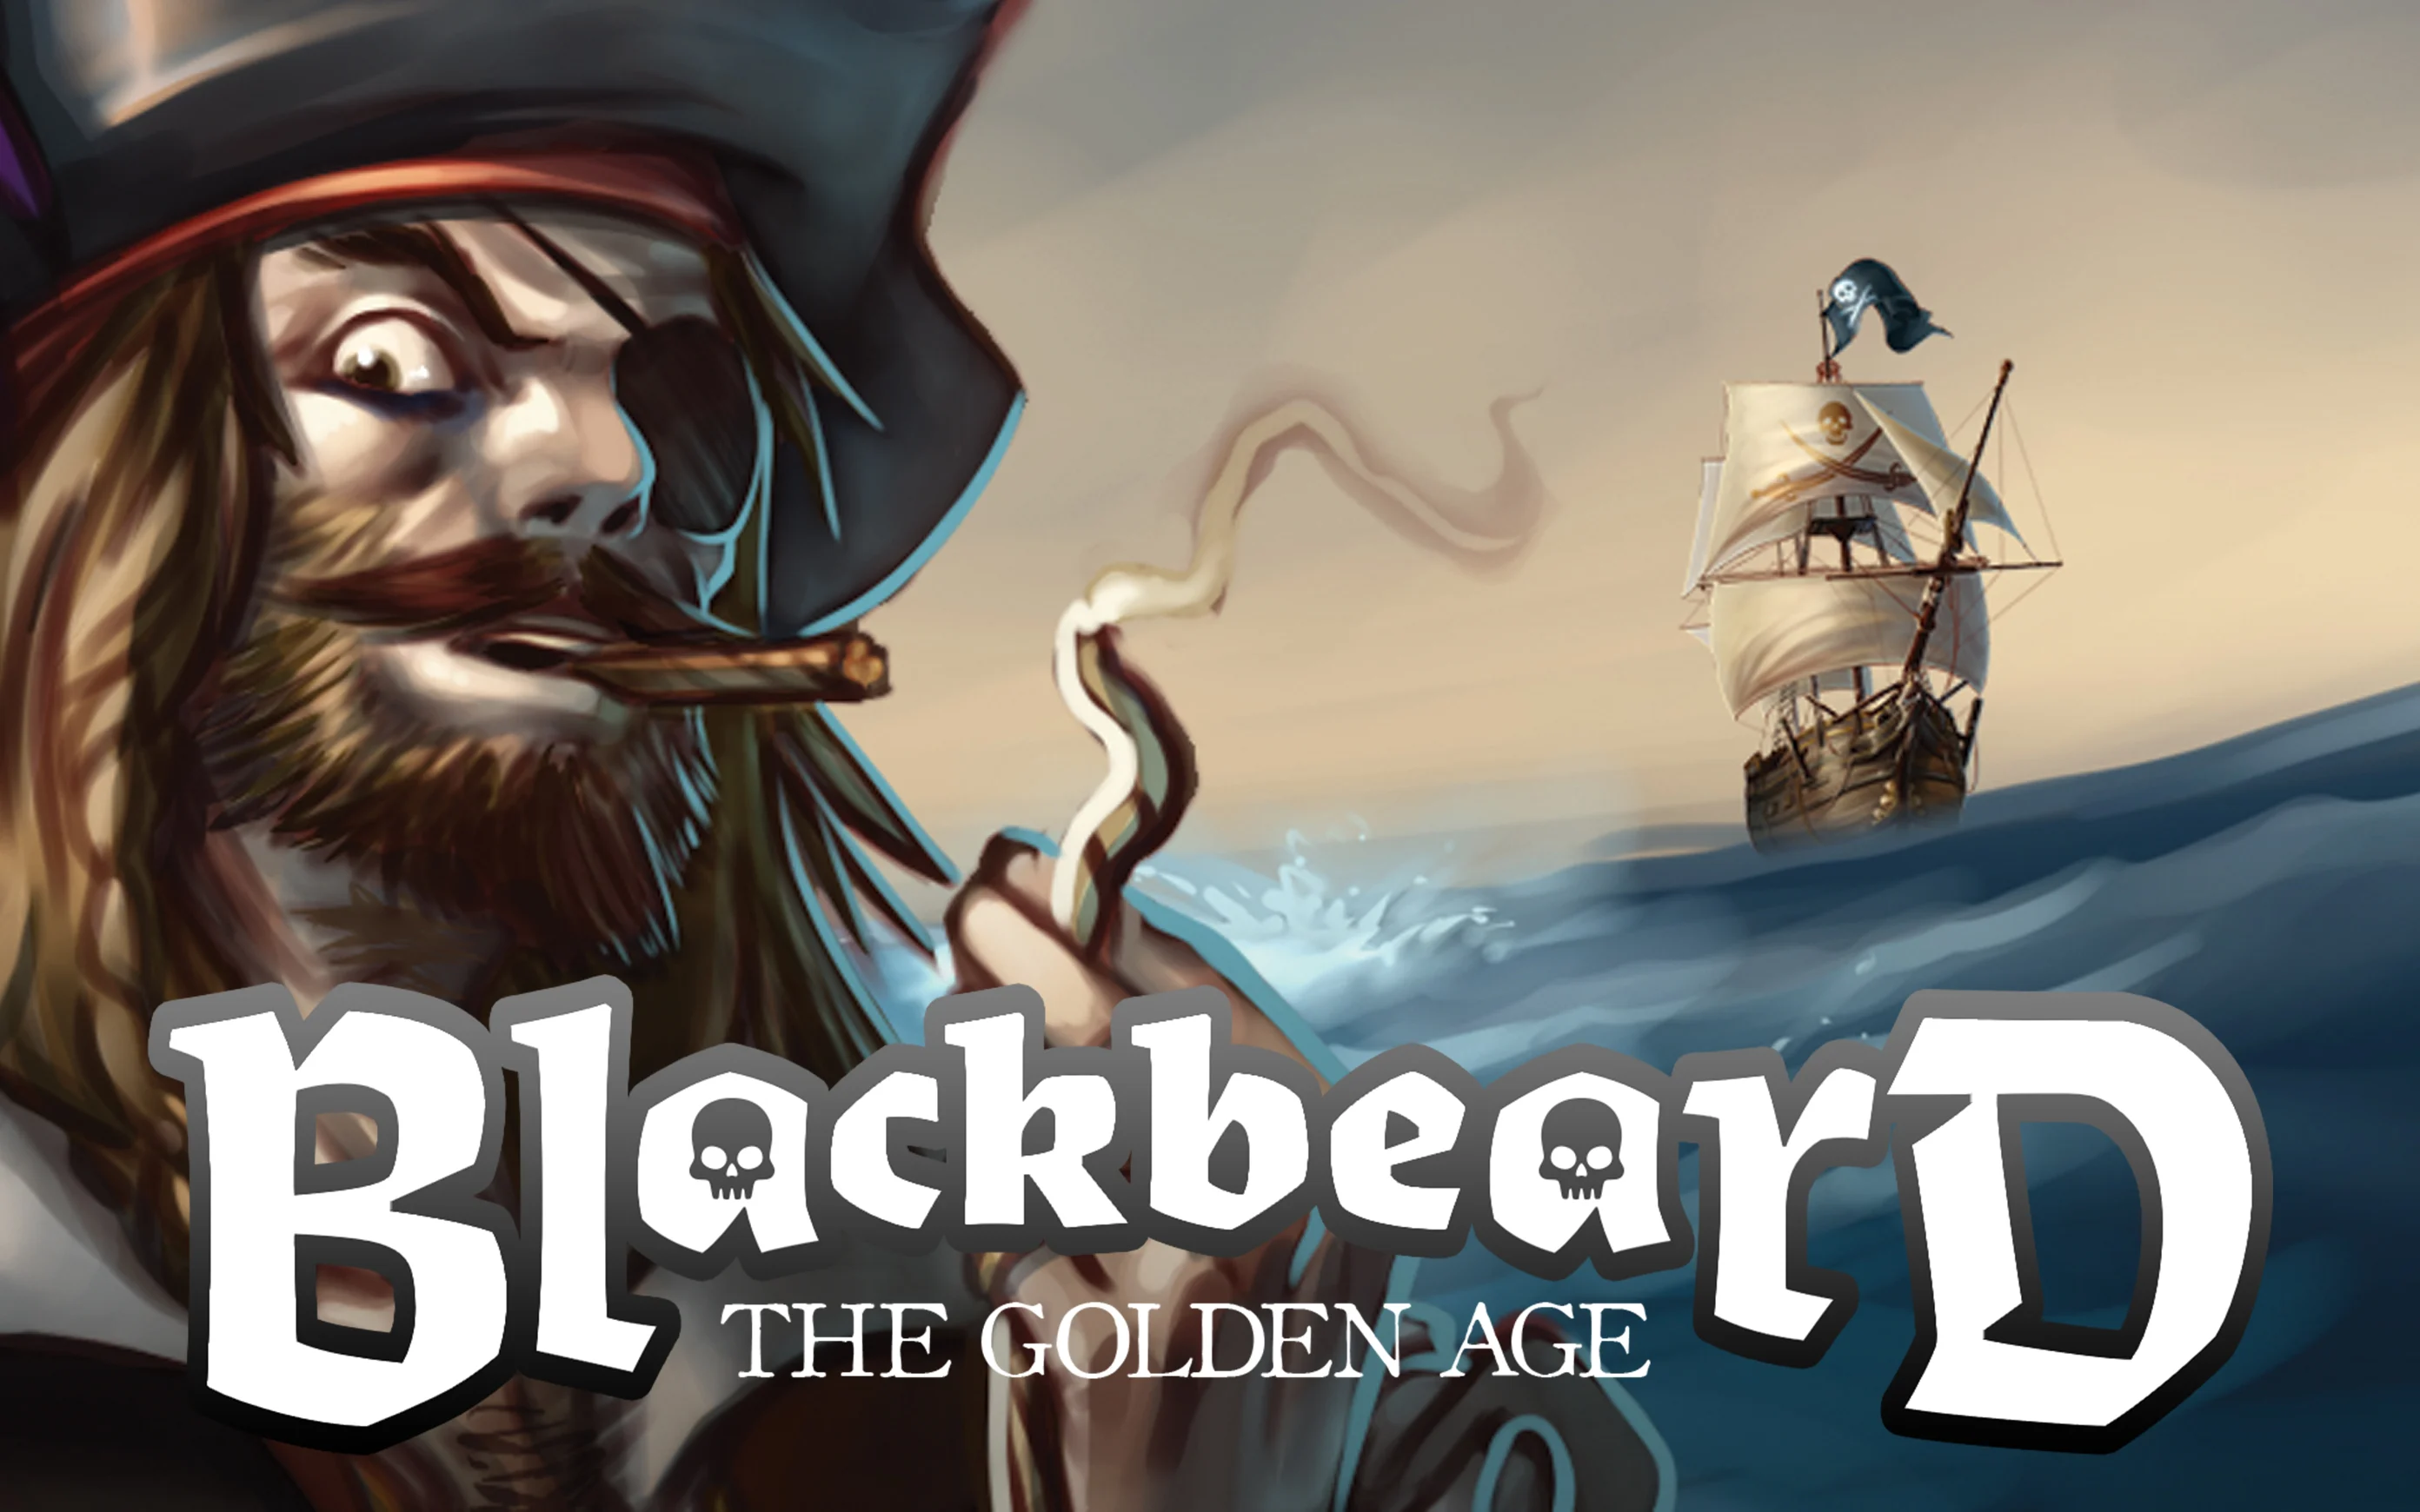 Gioca a Blackbeard - The Golden Age sul casino online Starcasino.be